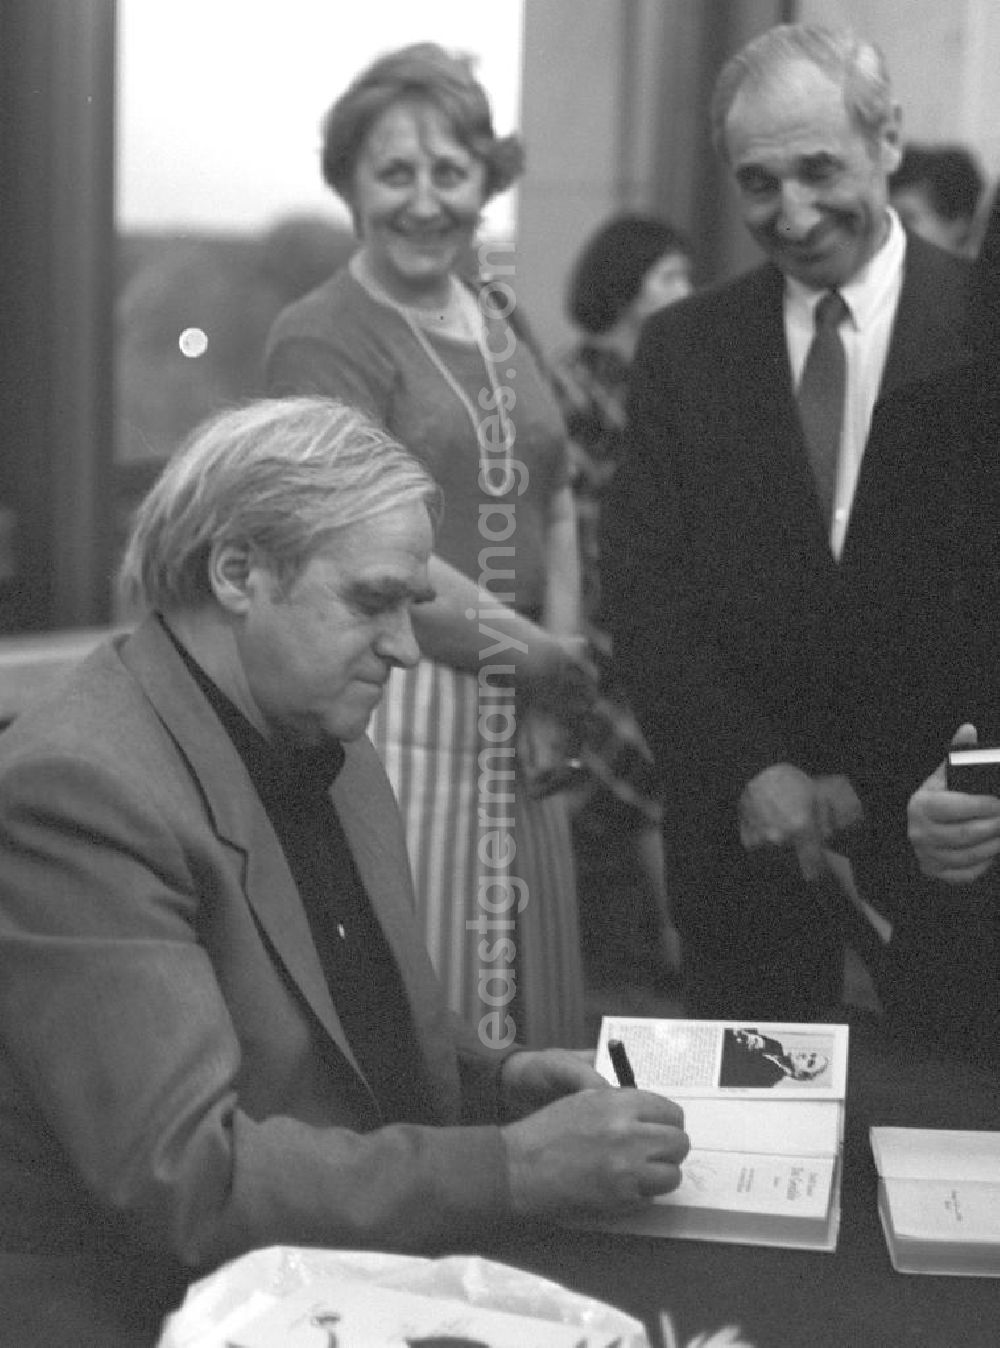 GDR image archive: Berlin - Der sowjetische Schriftsteller Daniil Granin bei einer Autogrammstunde im Theater im Palast (TiP) in Berlin. Das TiP war ein beliebter Veranstaltungsort im Palast der Republik.